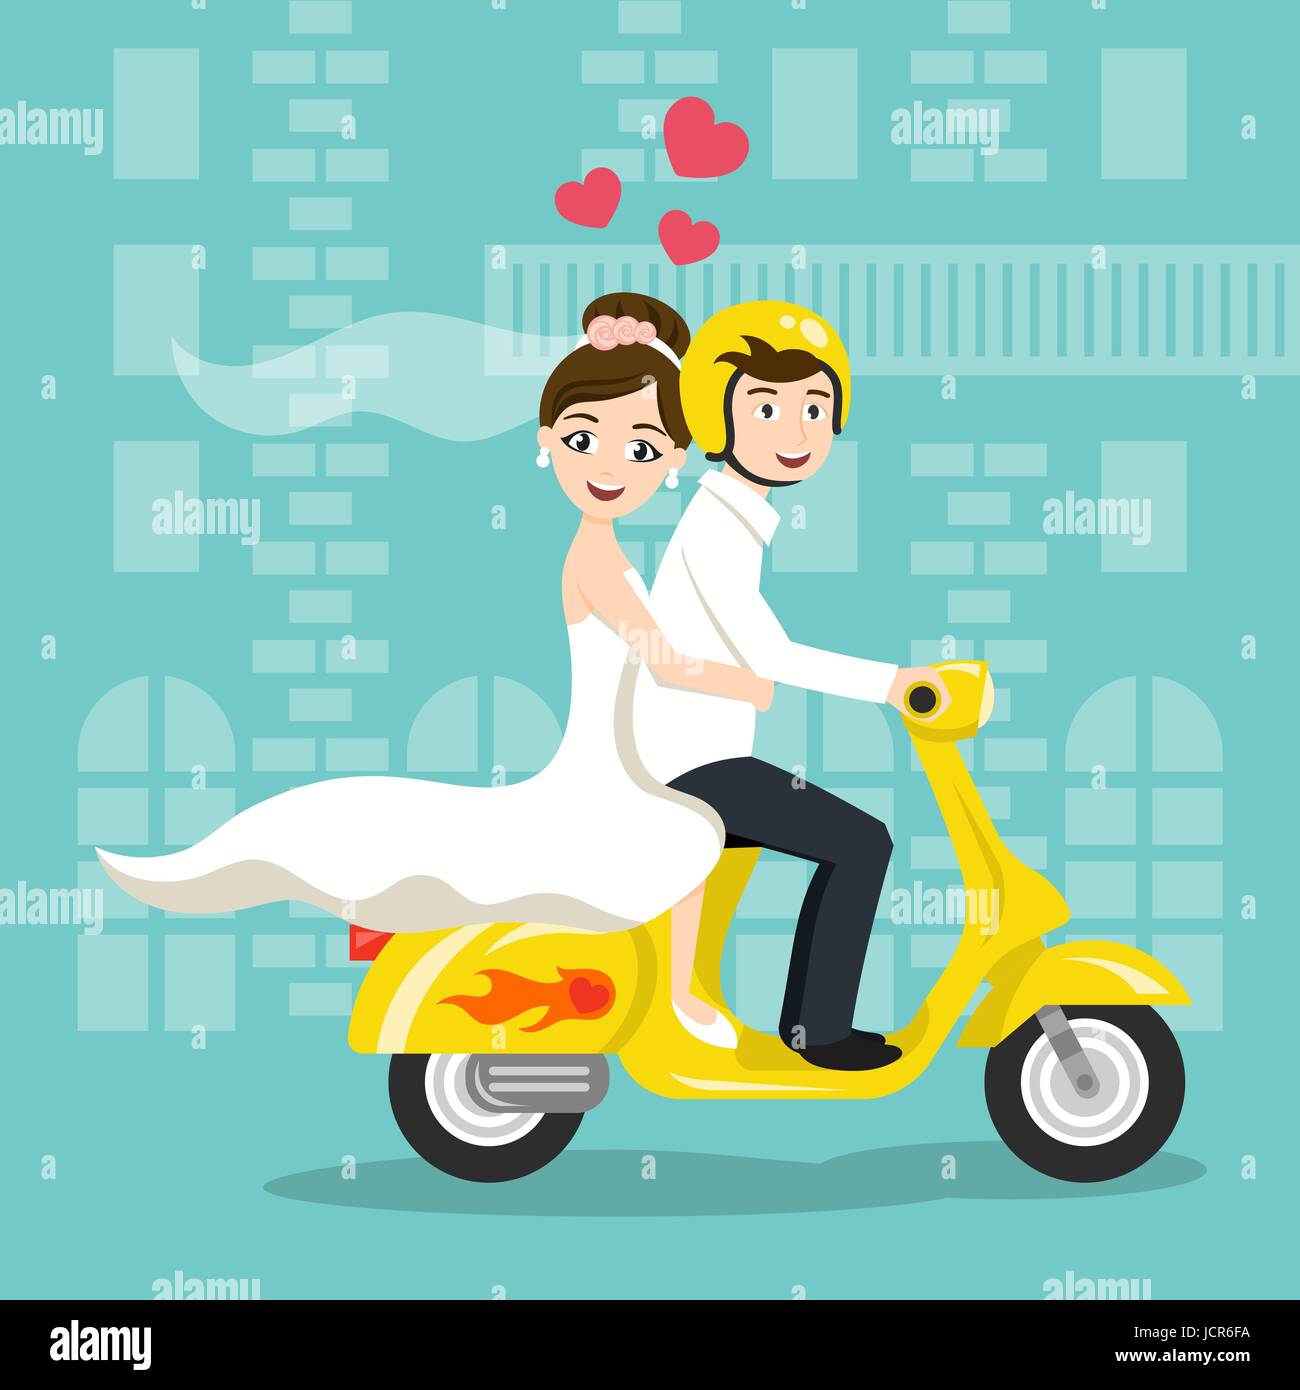 Vektor-Illustration von jungen glücklich Frischvermählten Brautpaar auf  Roller fahren. Retro-Stil Transport, moped Oldtimer suchen. Flitterwochen.  Vektor-print Stock-Vektorgrafik - Alamy